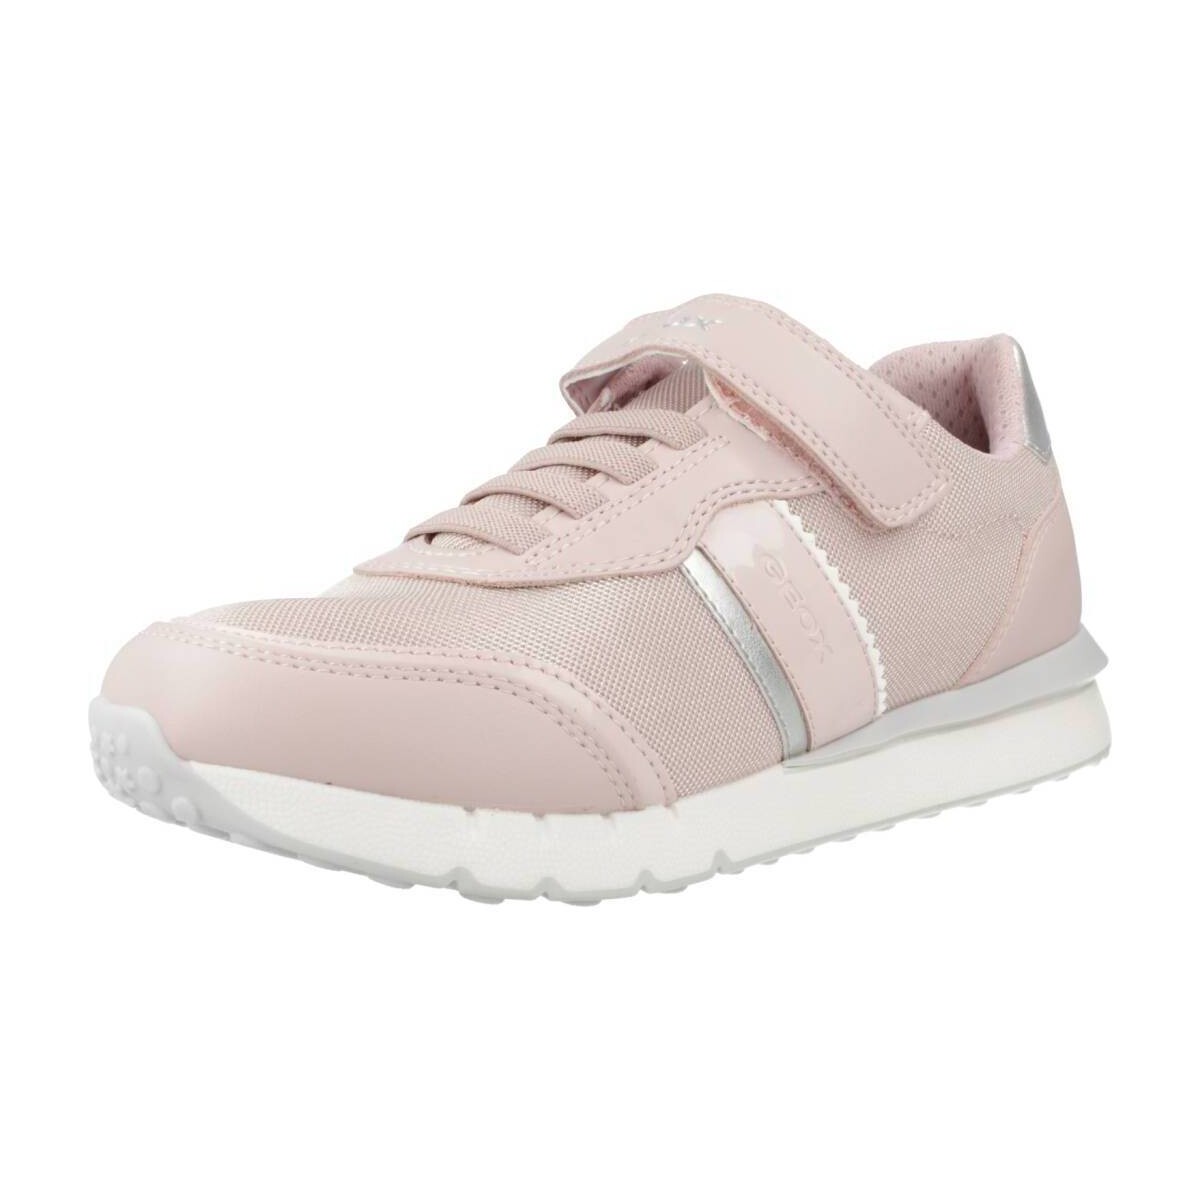 Cipők Lány Rövid szárú edzőcipők Geox J FASTICS GIRL Rózsaszín